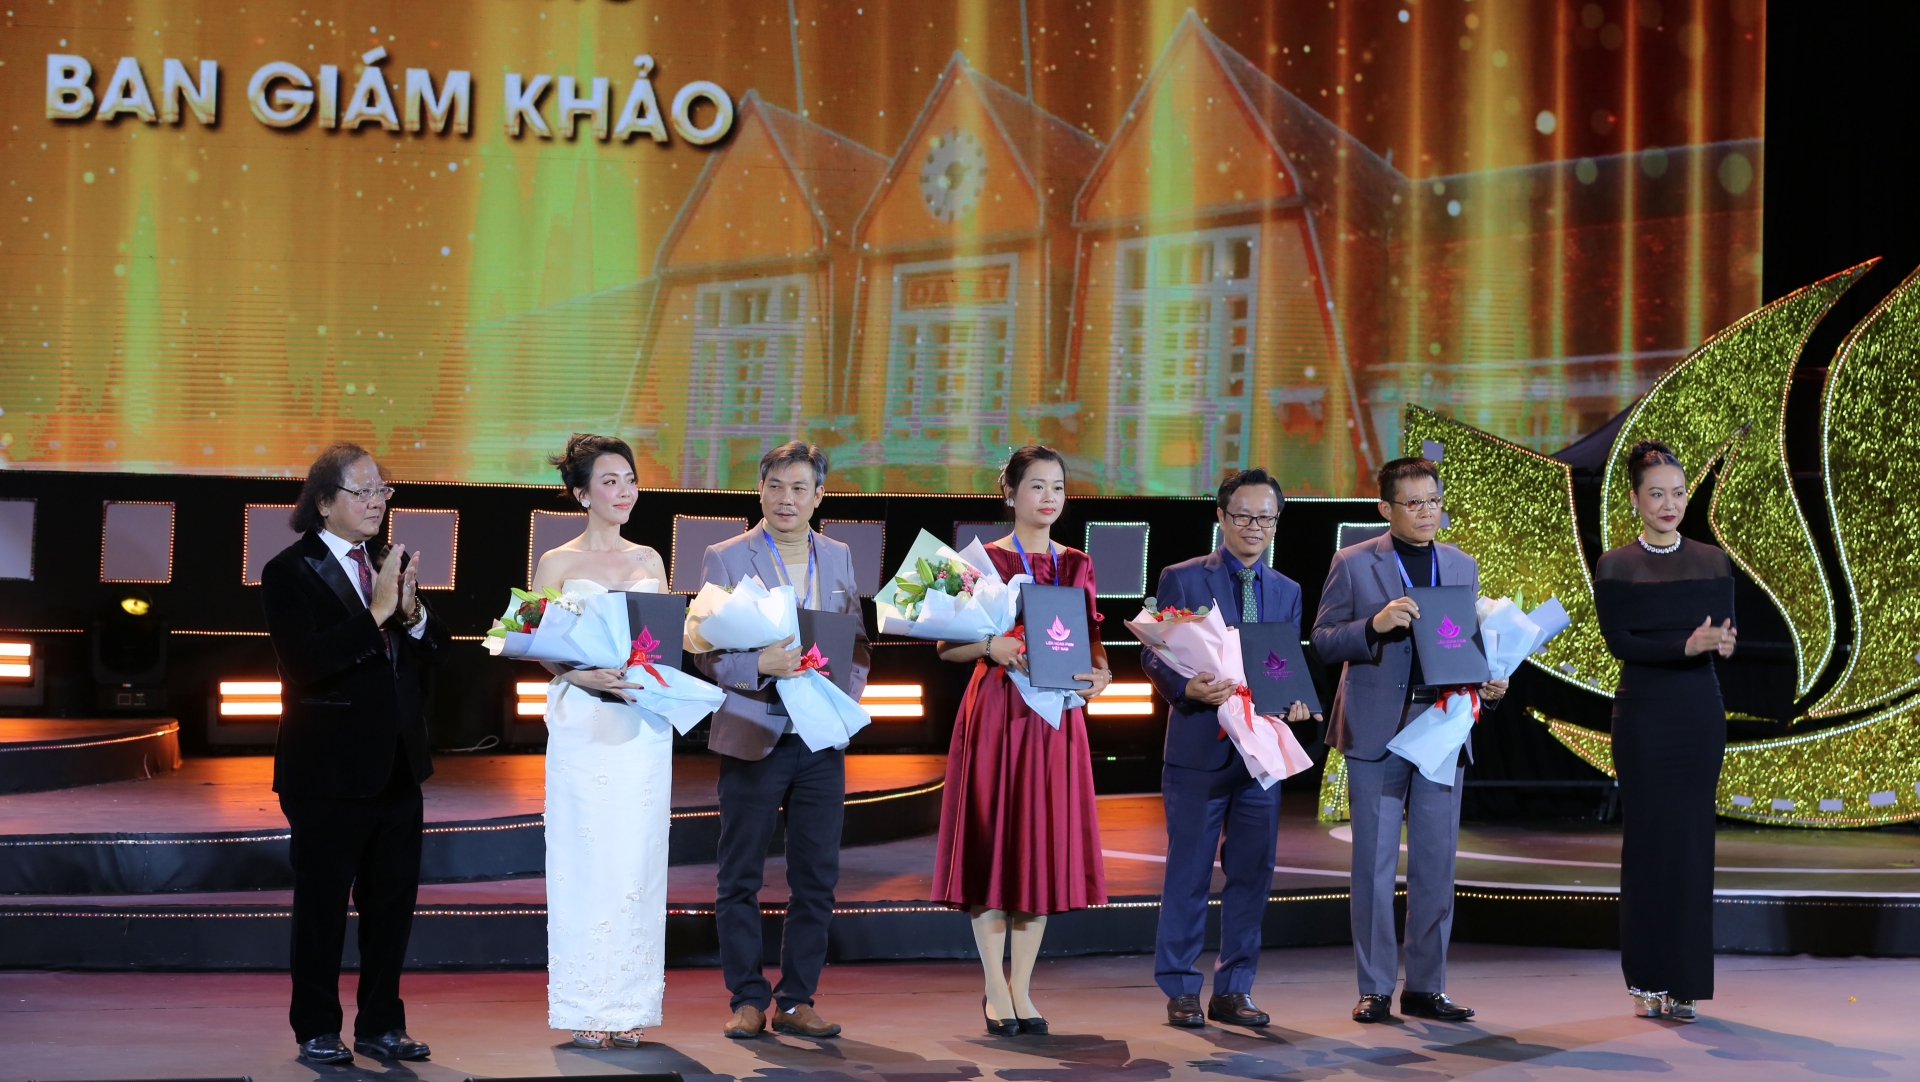 Diễn viên Hồng Ánh và ..... trao giải thưởng của ban giám khảo.